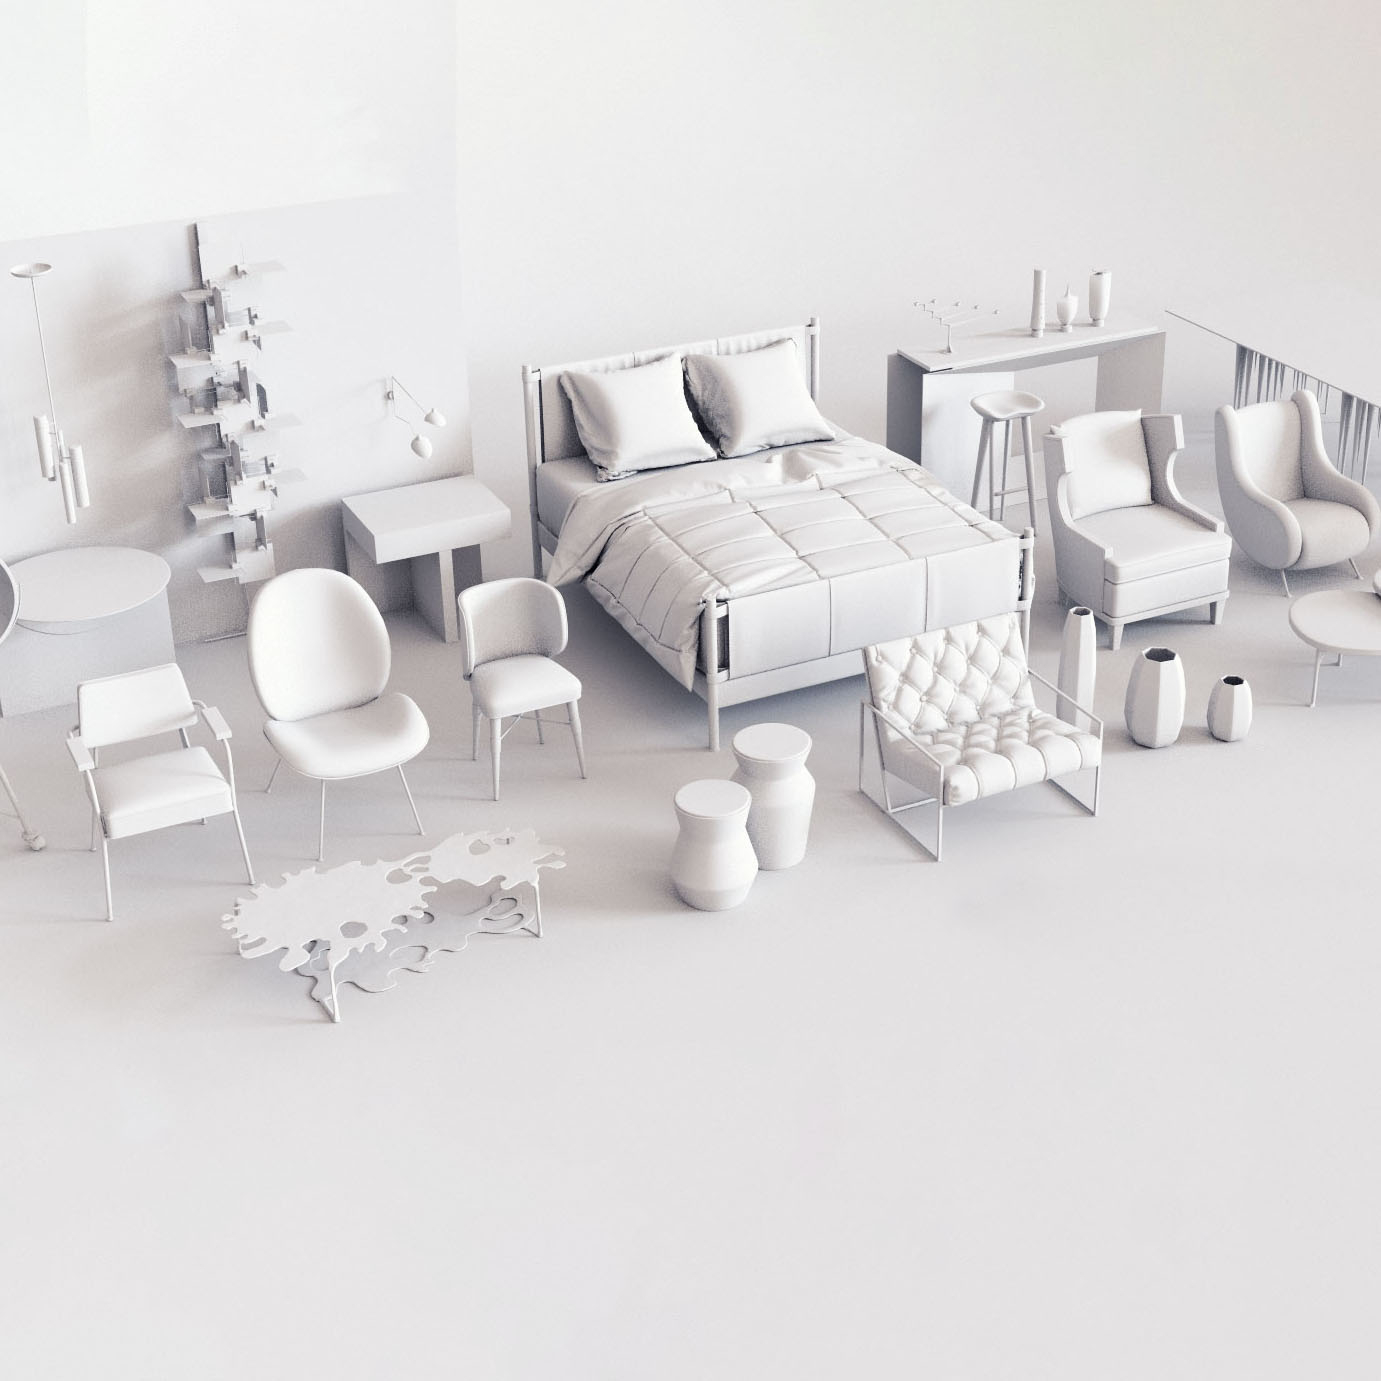 สุดยอดโปรแกรม 3D ฟรี 2020 | 3Dd Digital Fabrication เครื่องพิมพ์3มิติ  สแกนเนอร์ เลเซอร์